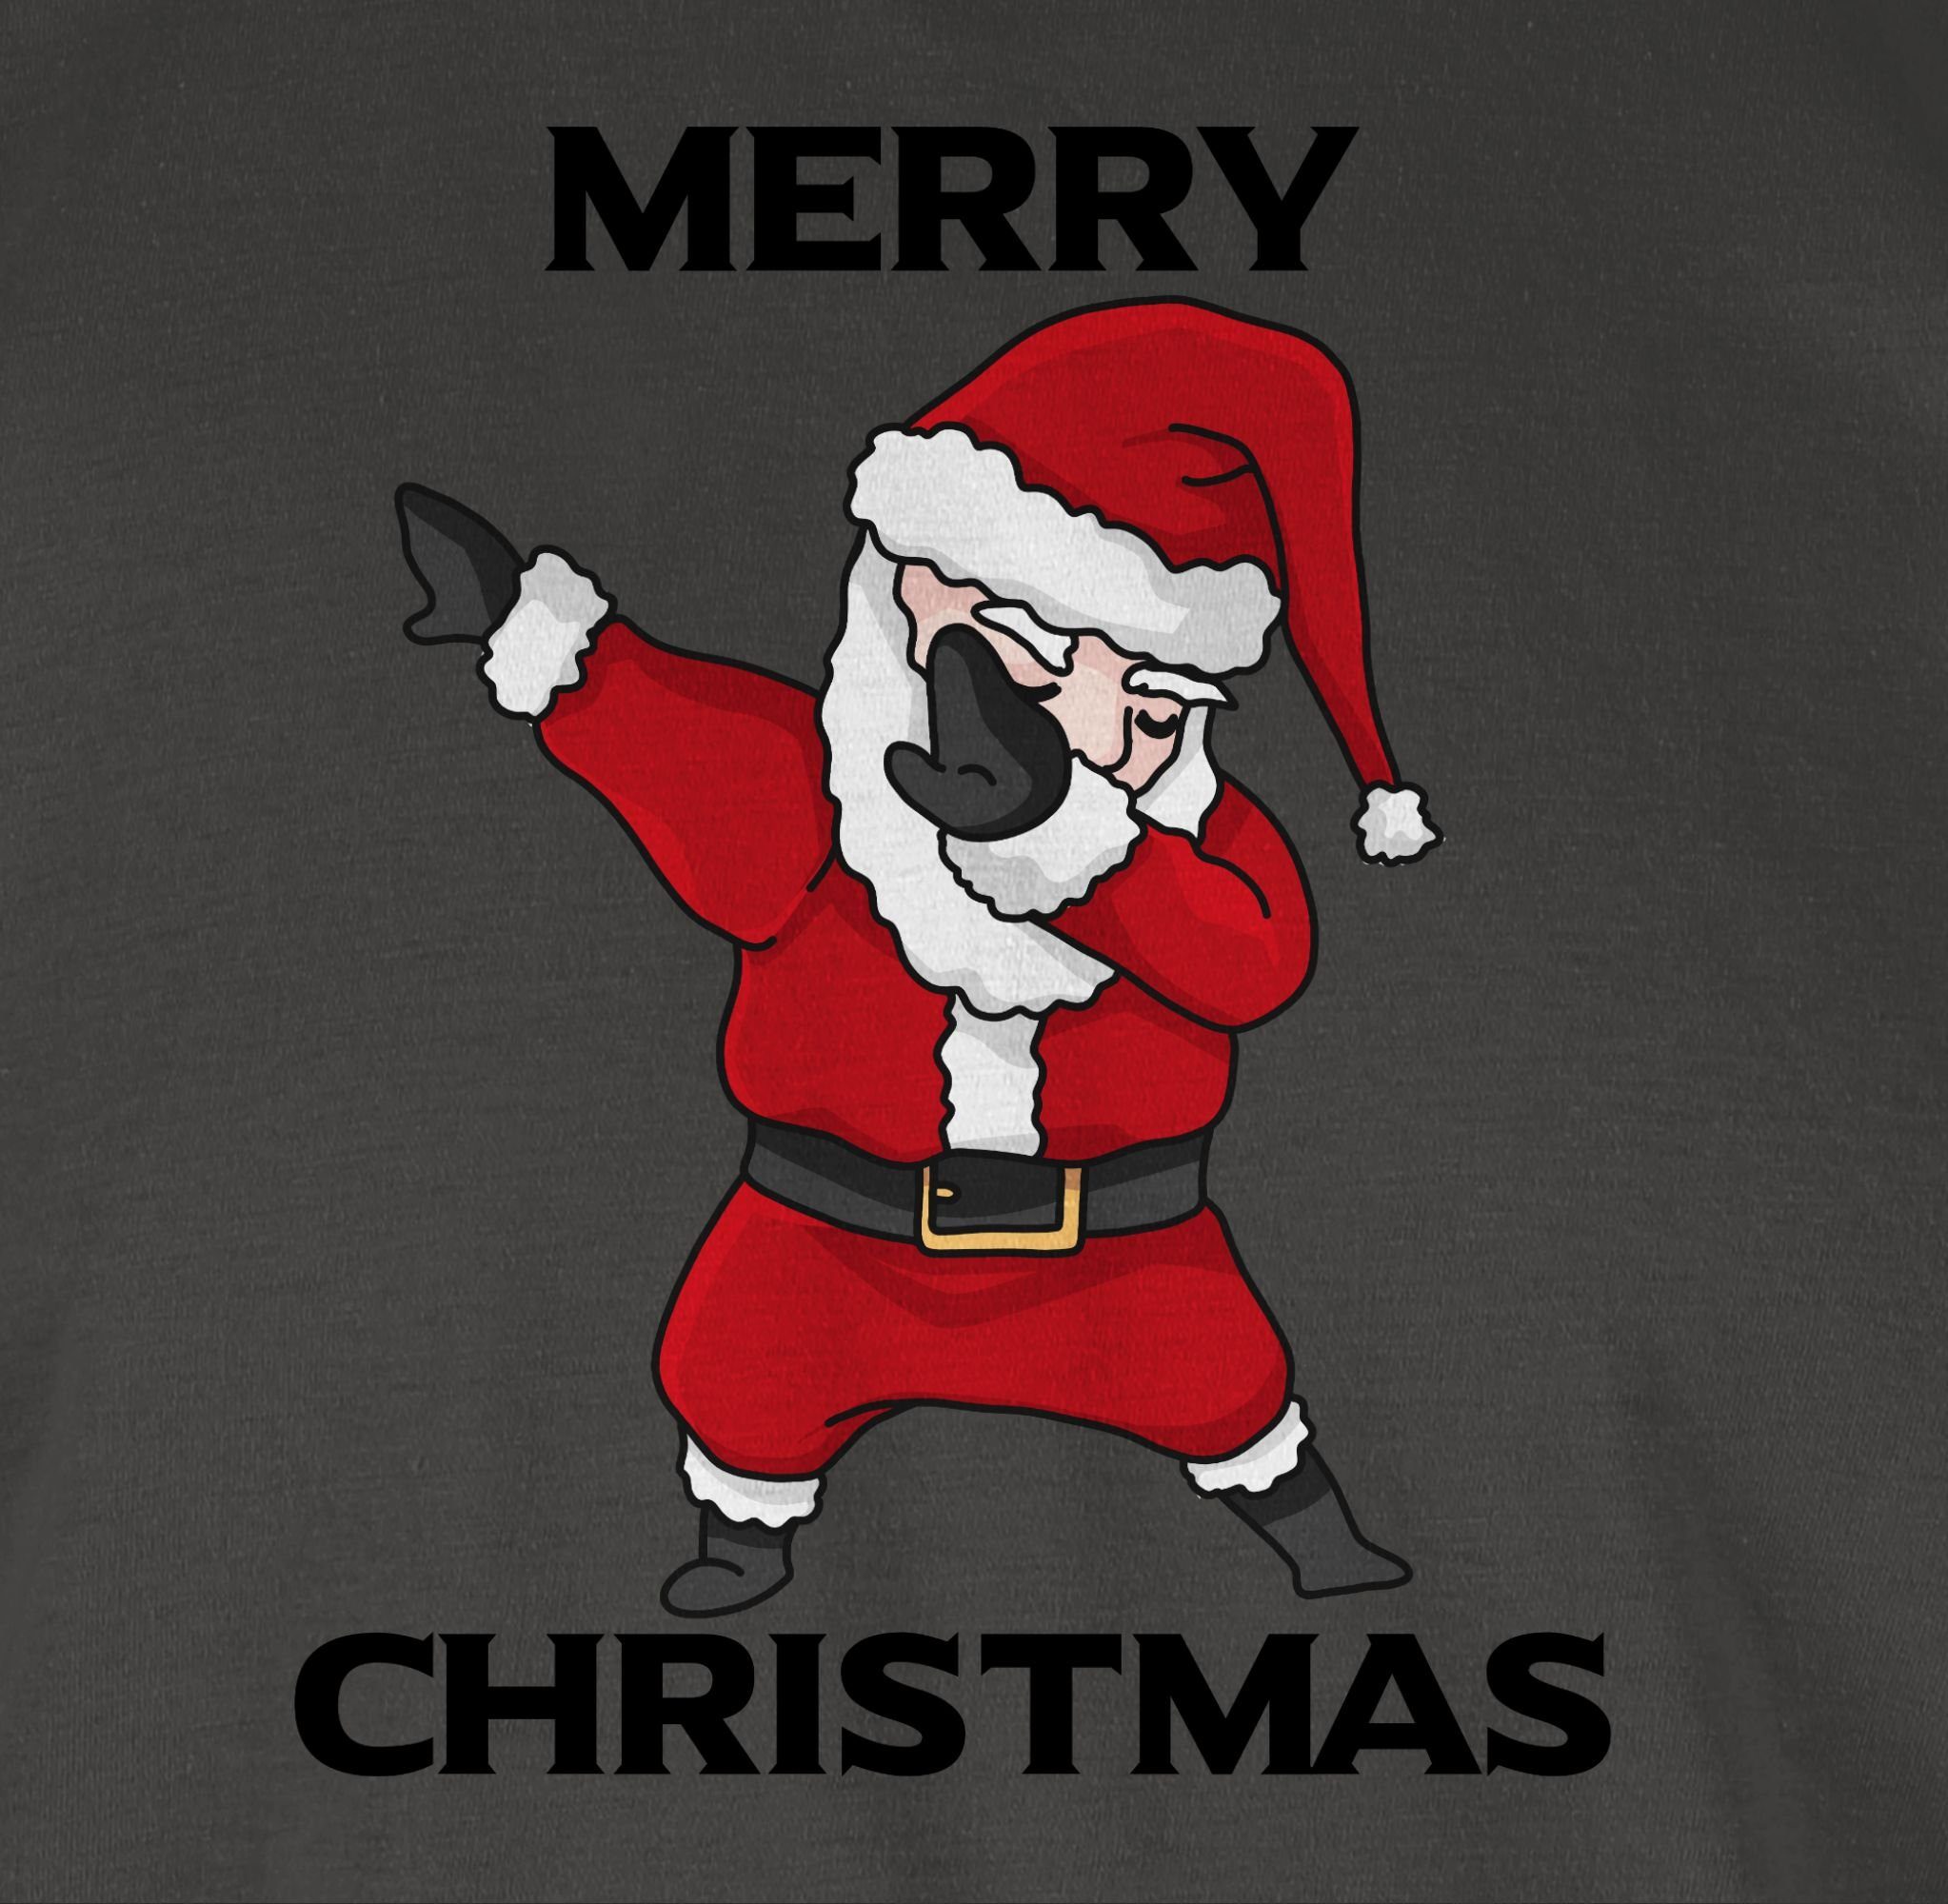 Shirtracer T-Shirt Dabbing Weihnachtsmann Weihachten Kleidung Dunkelgrau 1